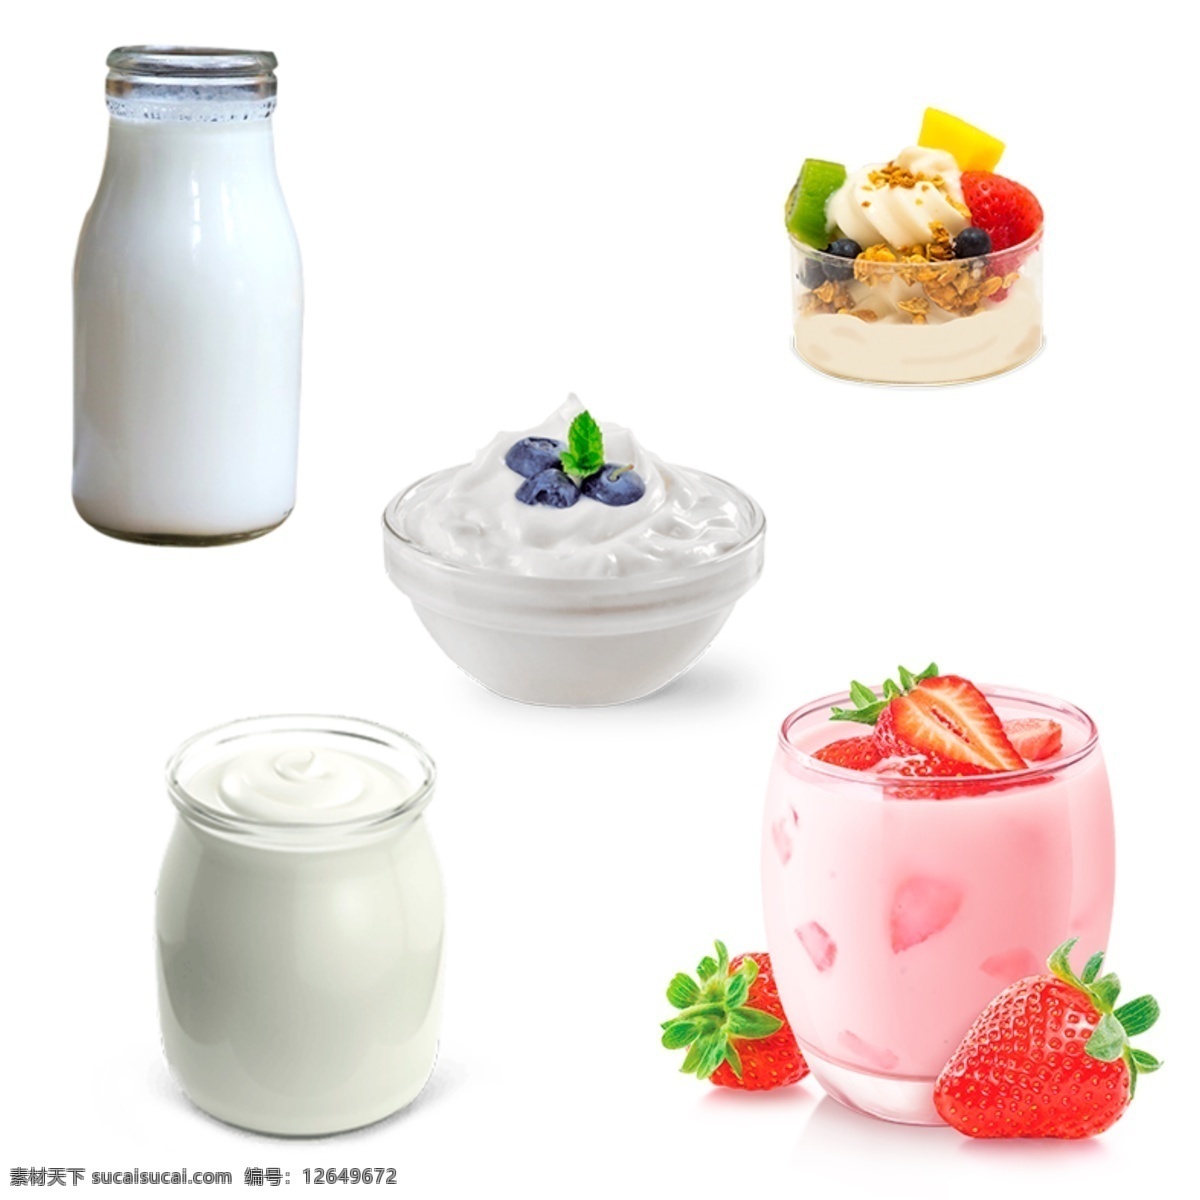 酸奶图片 酸奶 坚果酸奶 酸奶画面 牛奶